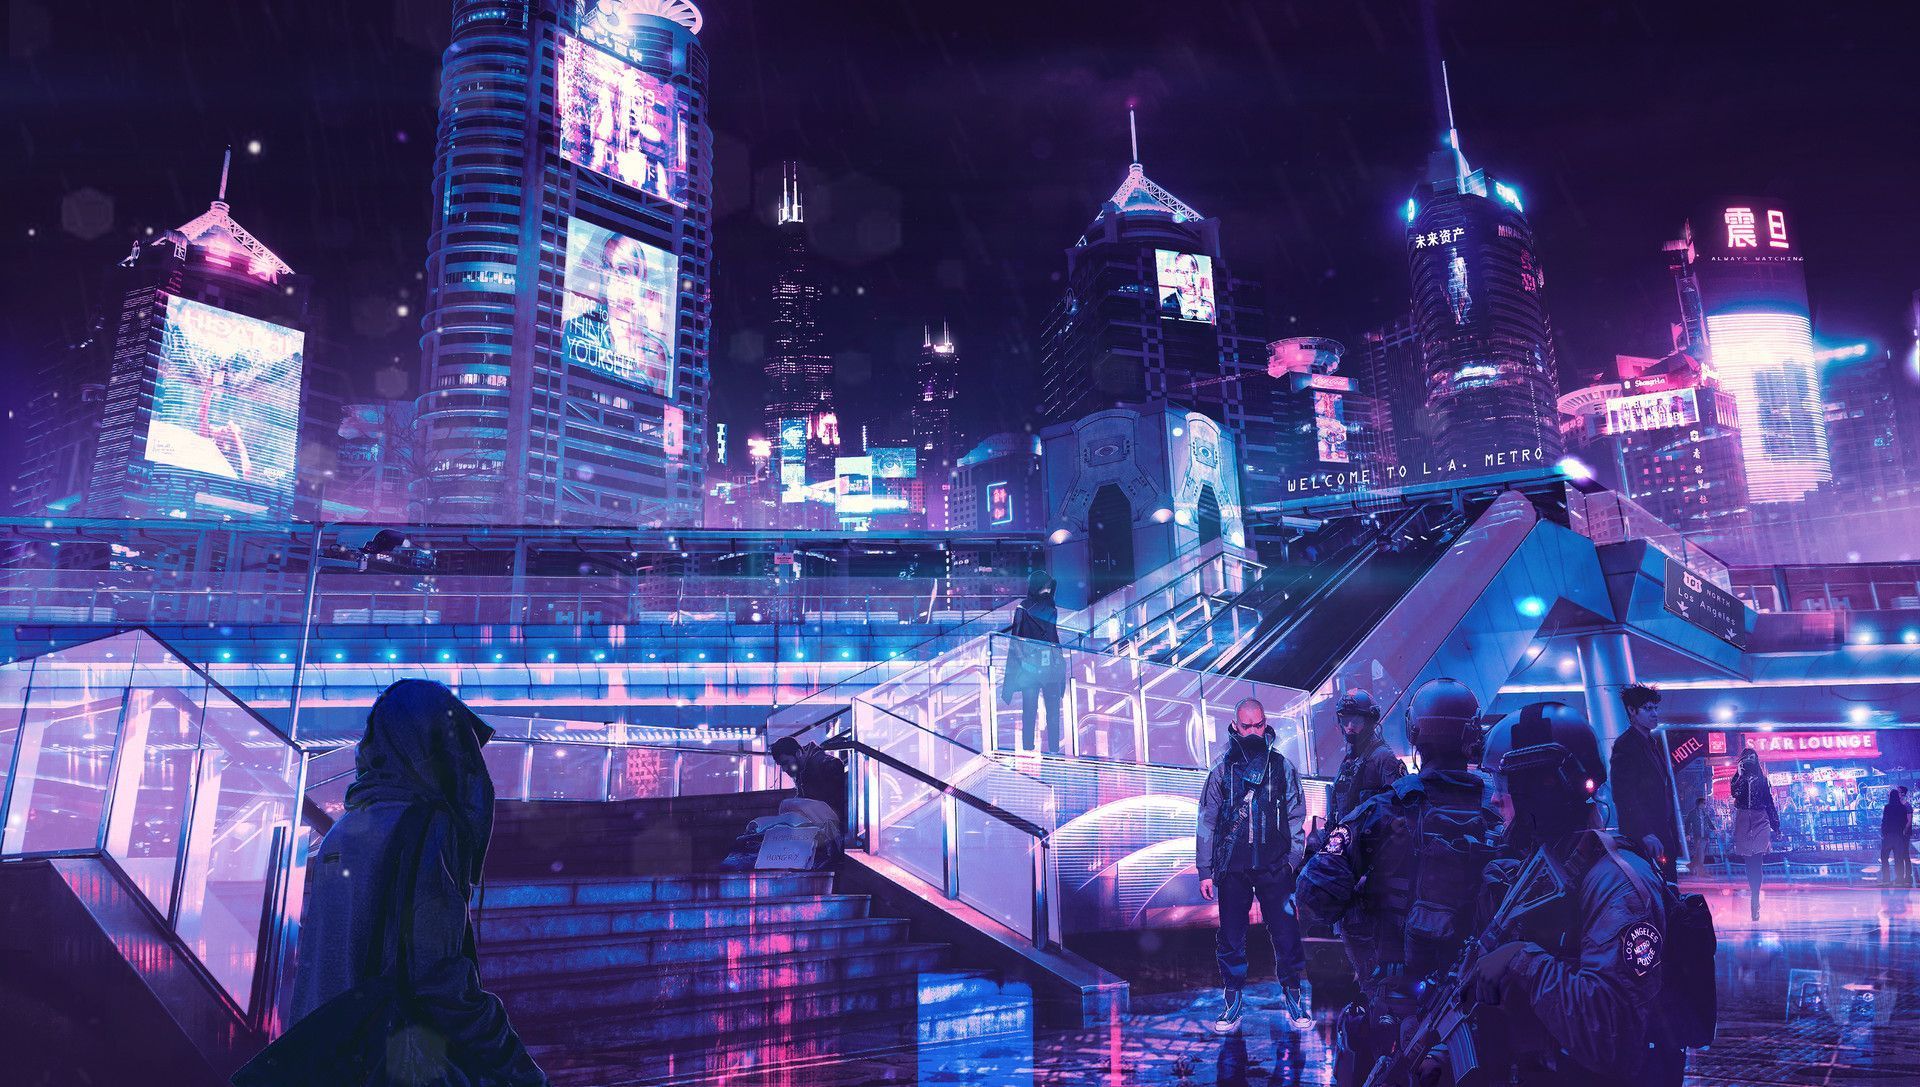 Neon City 1